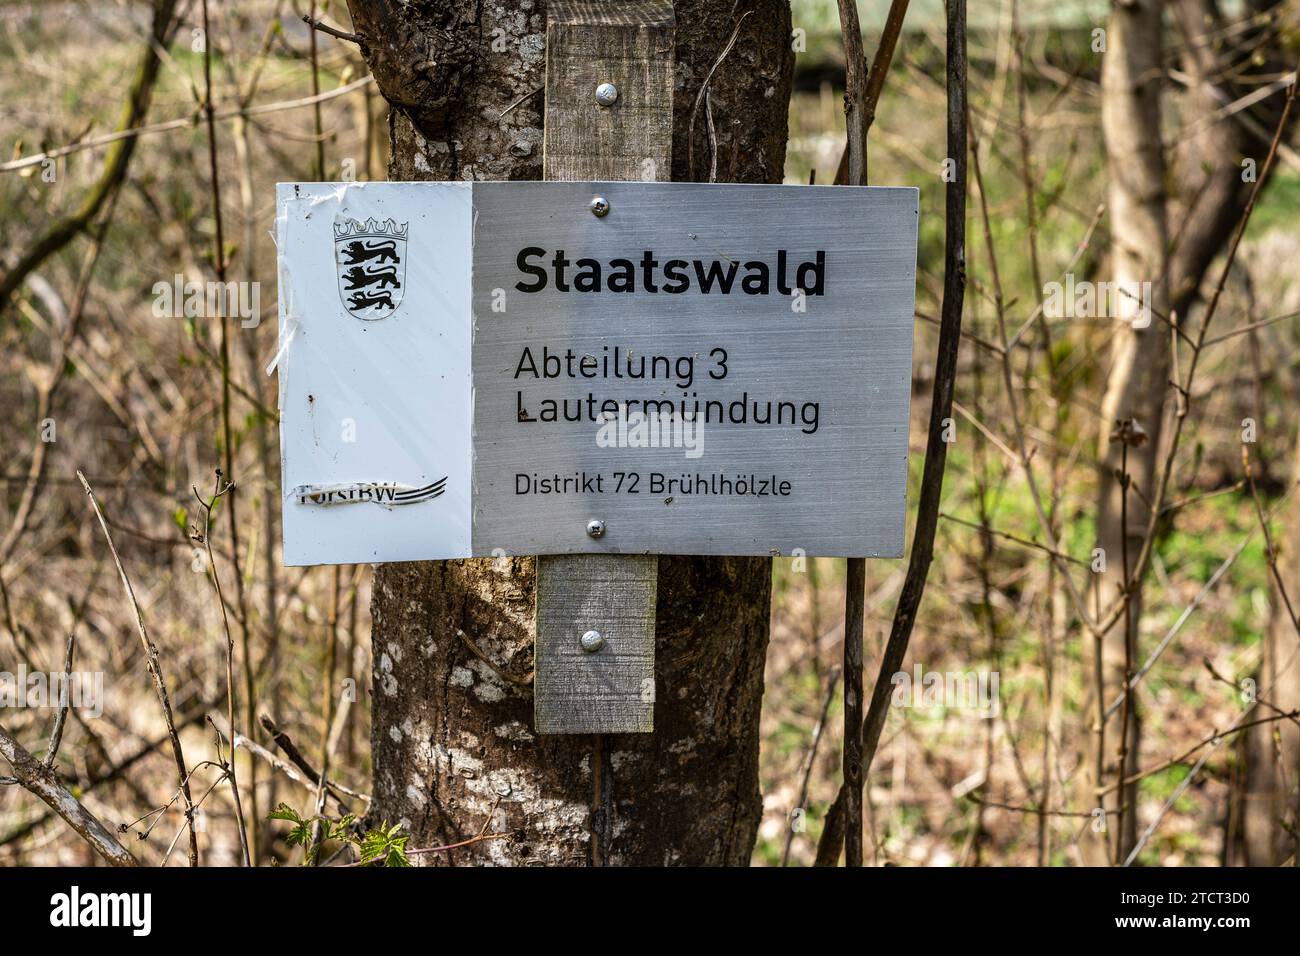 Symbolisches Bild des Begriffs eines Staatswaldes am Beispiel der Beschilderung eines solchen Waldes bei Lauterach auf der Schwäbischen Alb. Stockfoto